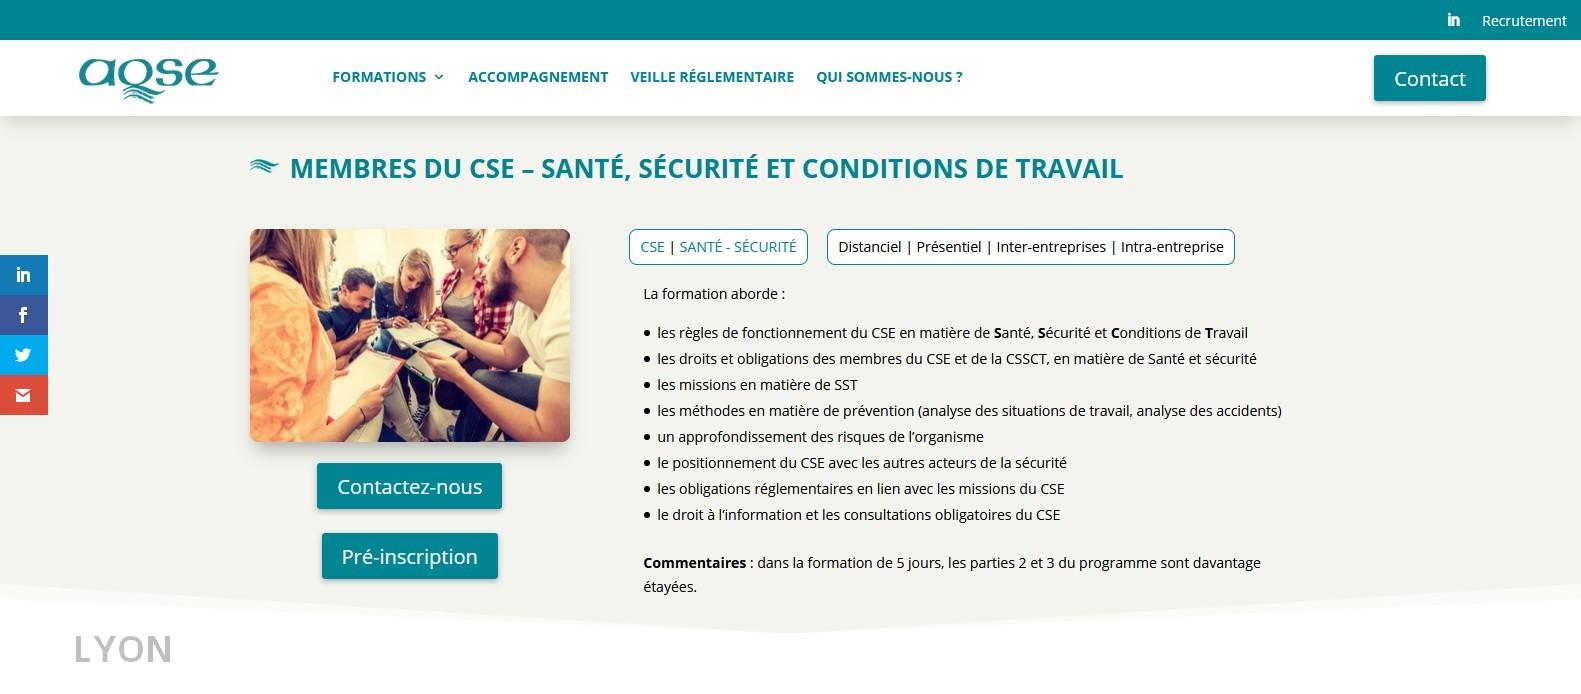 AQSE-France.fr formation obligatoire du CSE Lyon